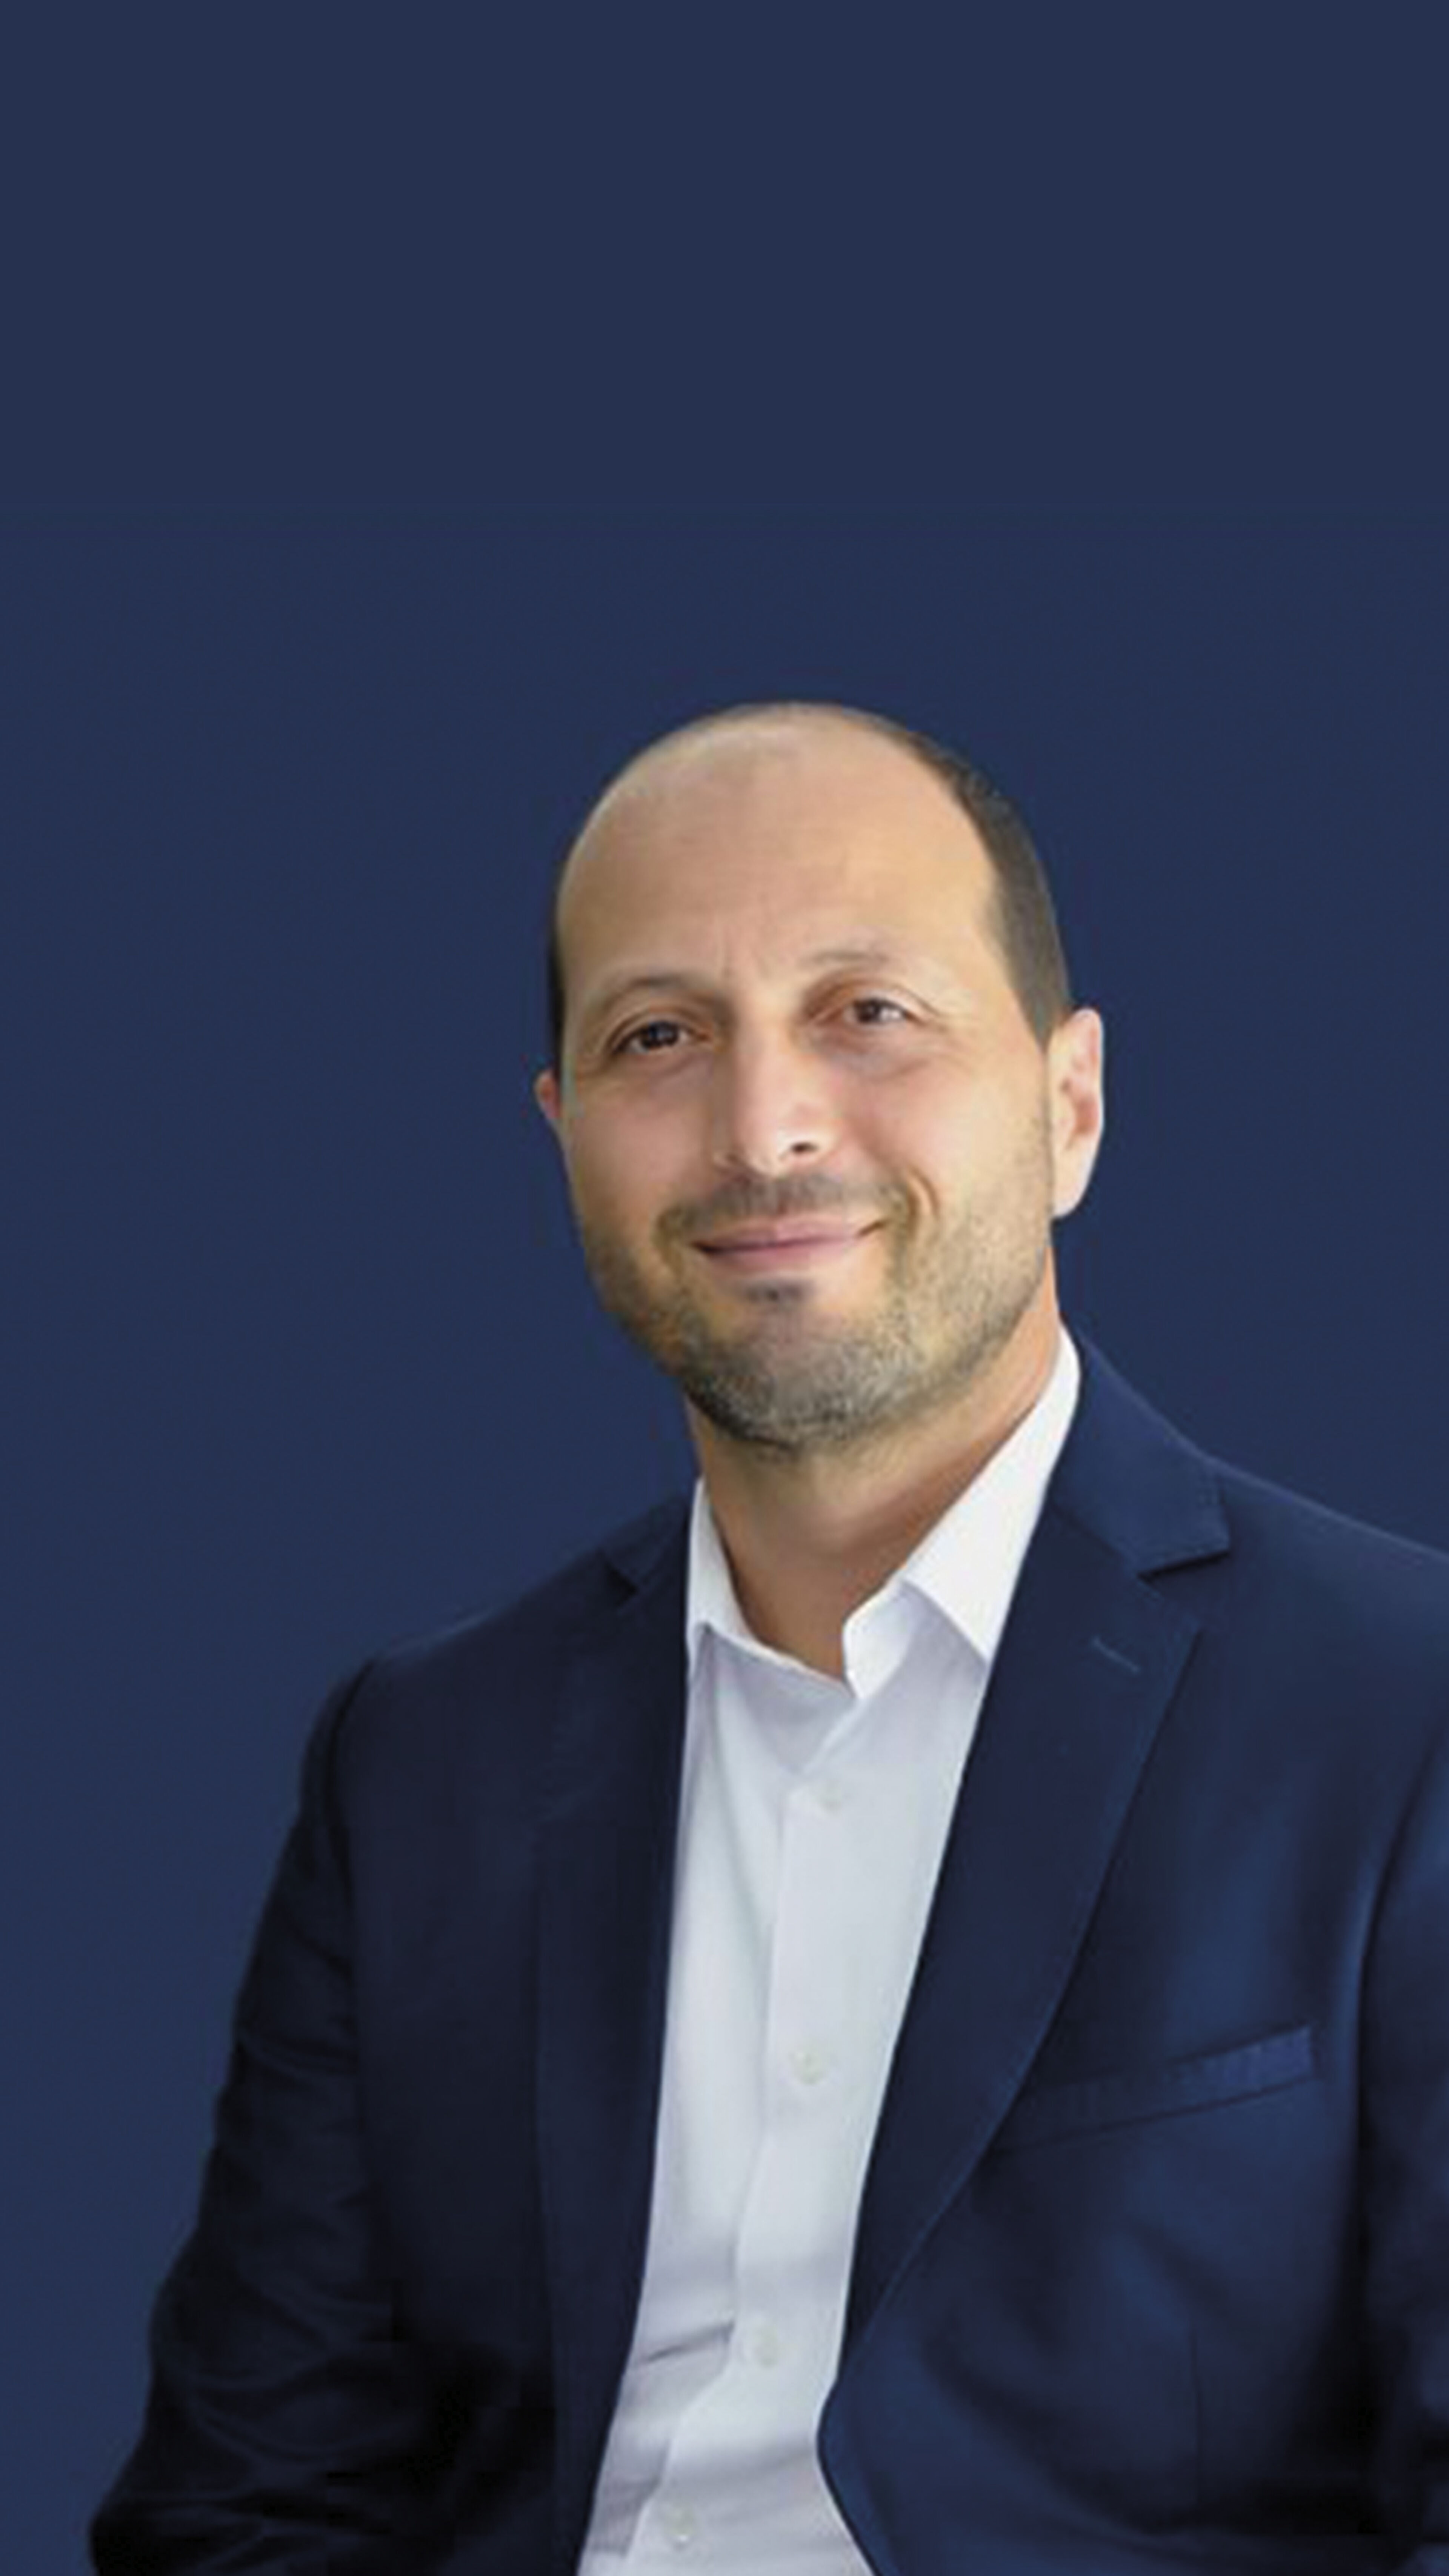 Youssef Bouabid est un lauréat du MBA Management Général / MBA International Paris. Il sourit en costume sur fond bleu, illustrant le professionnalisme.